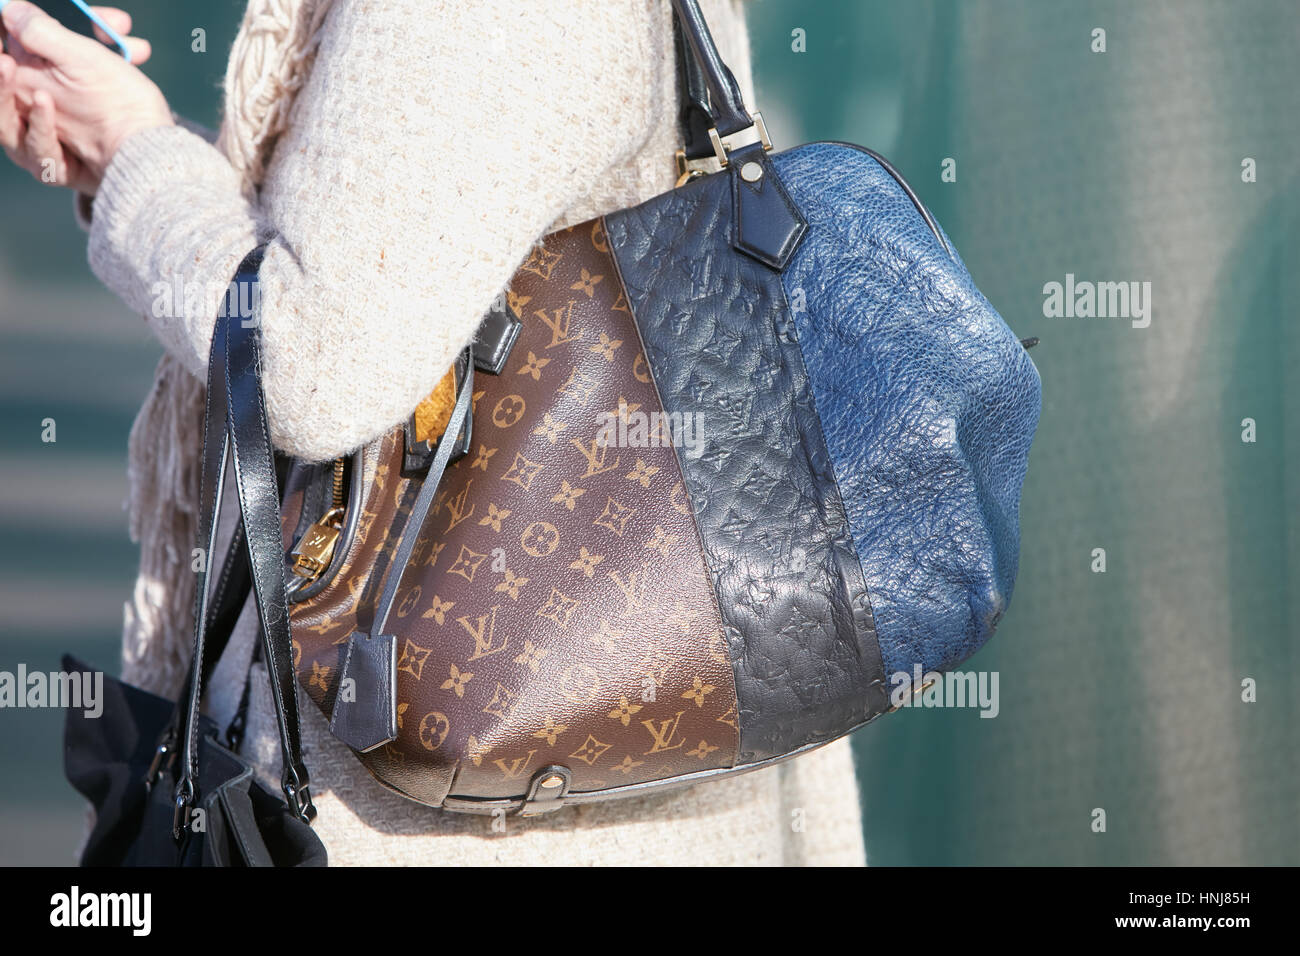 Frau mit Louis Vuitton Tasche in braun und blau Farben vor Giorgio  Armani-Modenschau, Milan Fashion Week Streetstyle auf Janua Stockfotografie  - Alamy